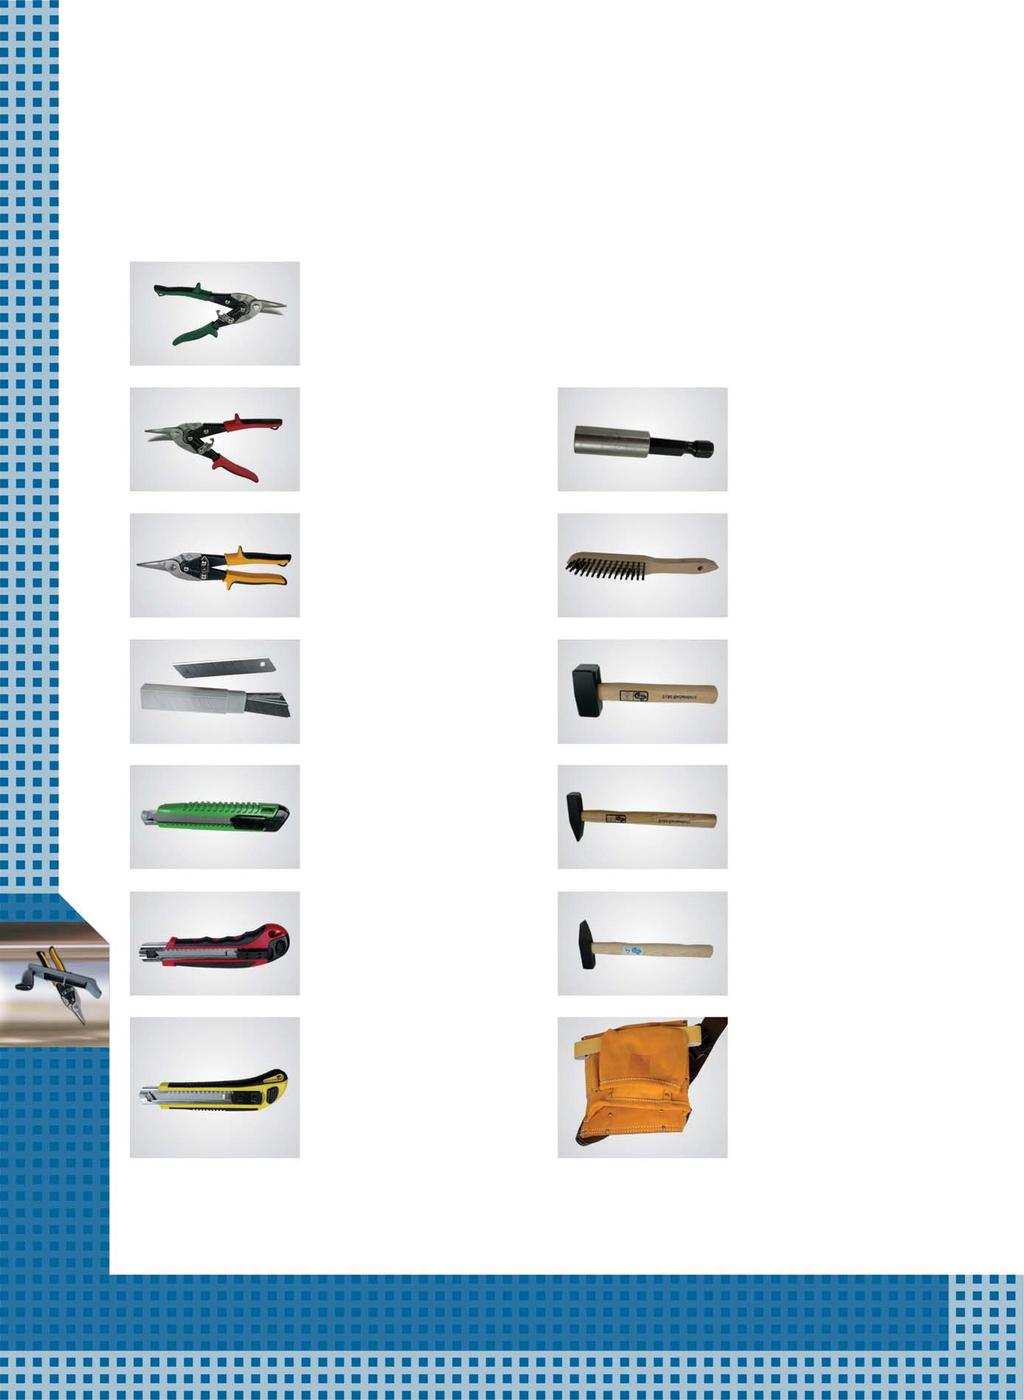 Werkzeuge Werkzeuge Werkzeuge Trockenbauwerkzeug - Qualitätswerkzeug zu attraktiven Preisen: W6 - Schneidewerkzeuge W7 - Zubehör Cuttermesser mit selbstnachladendem Magazin 3 Klingen, automatischer